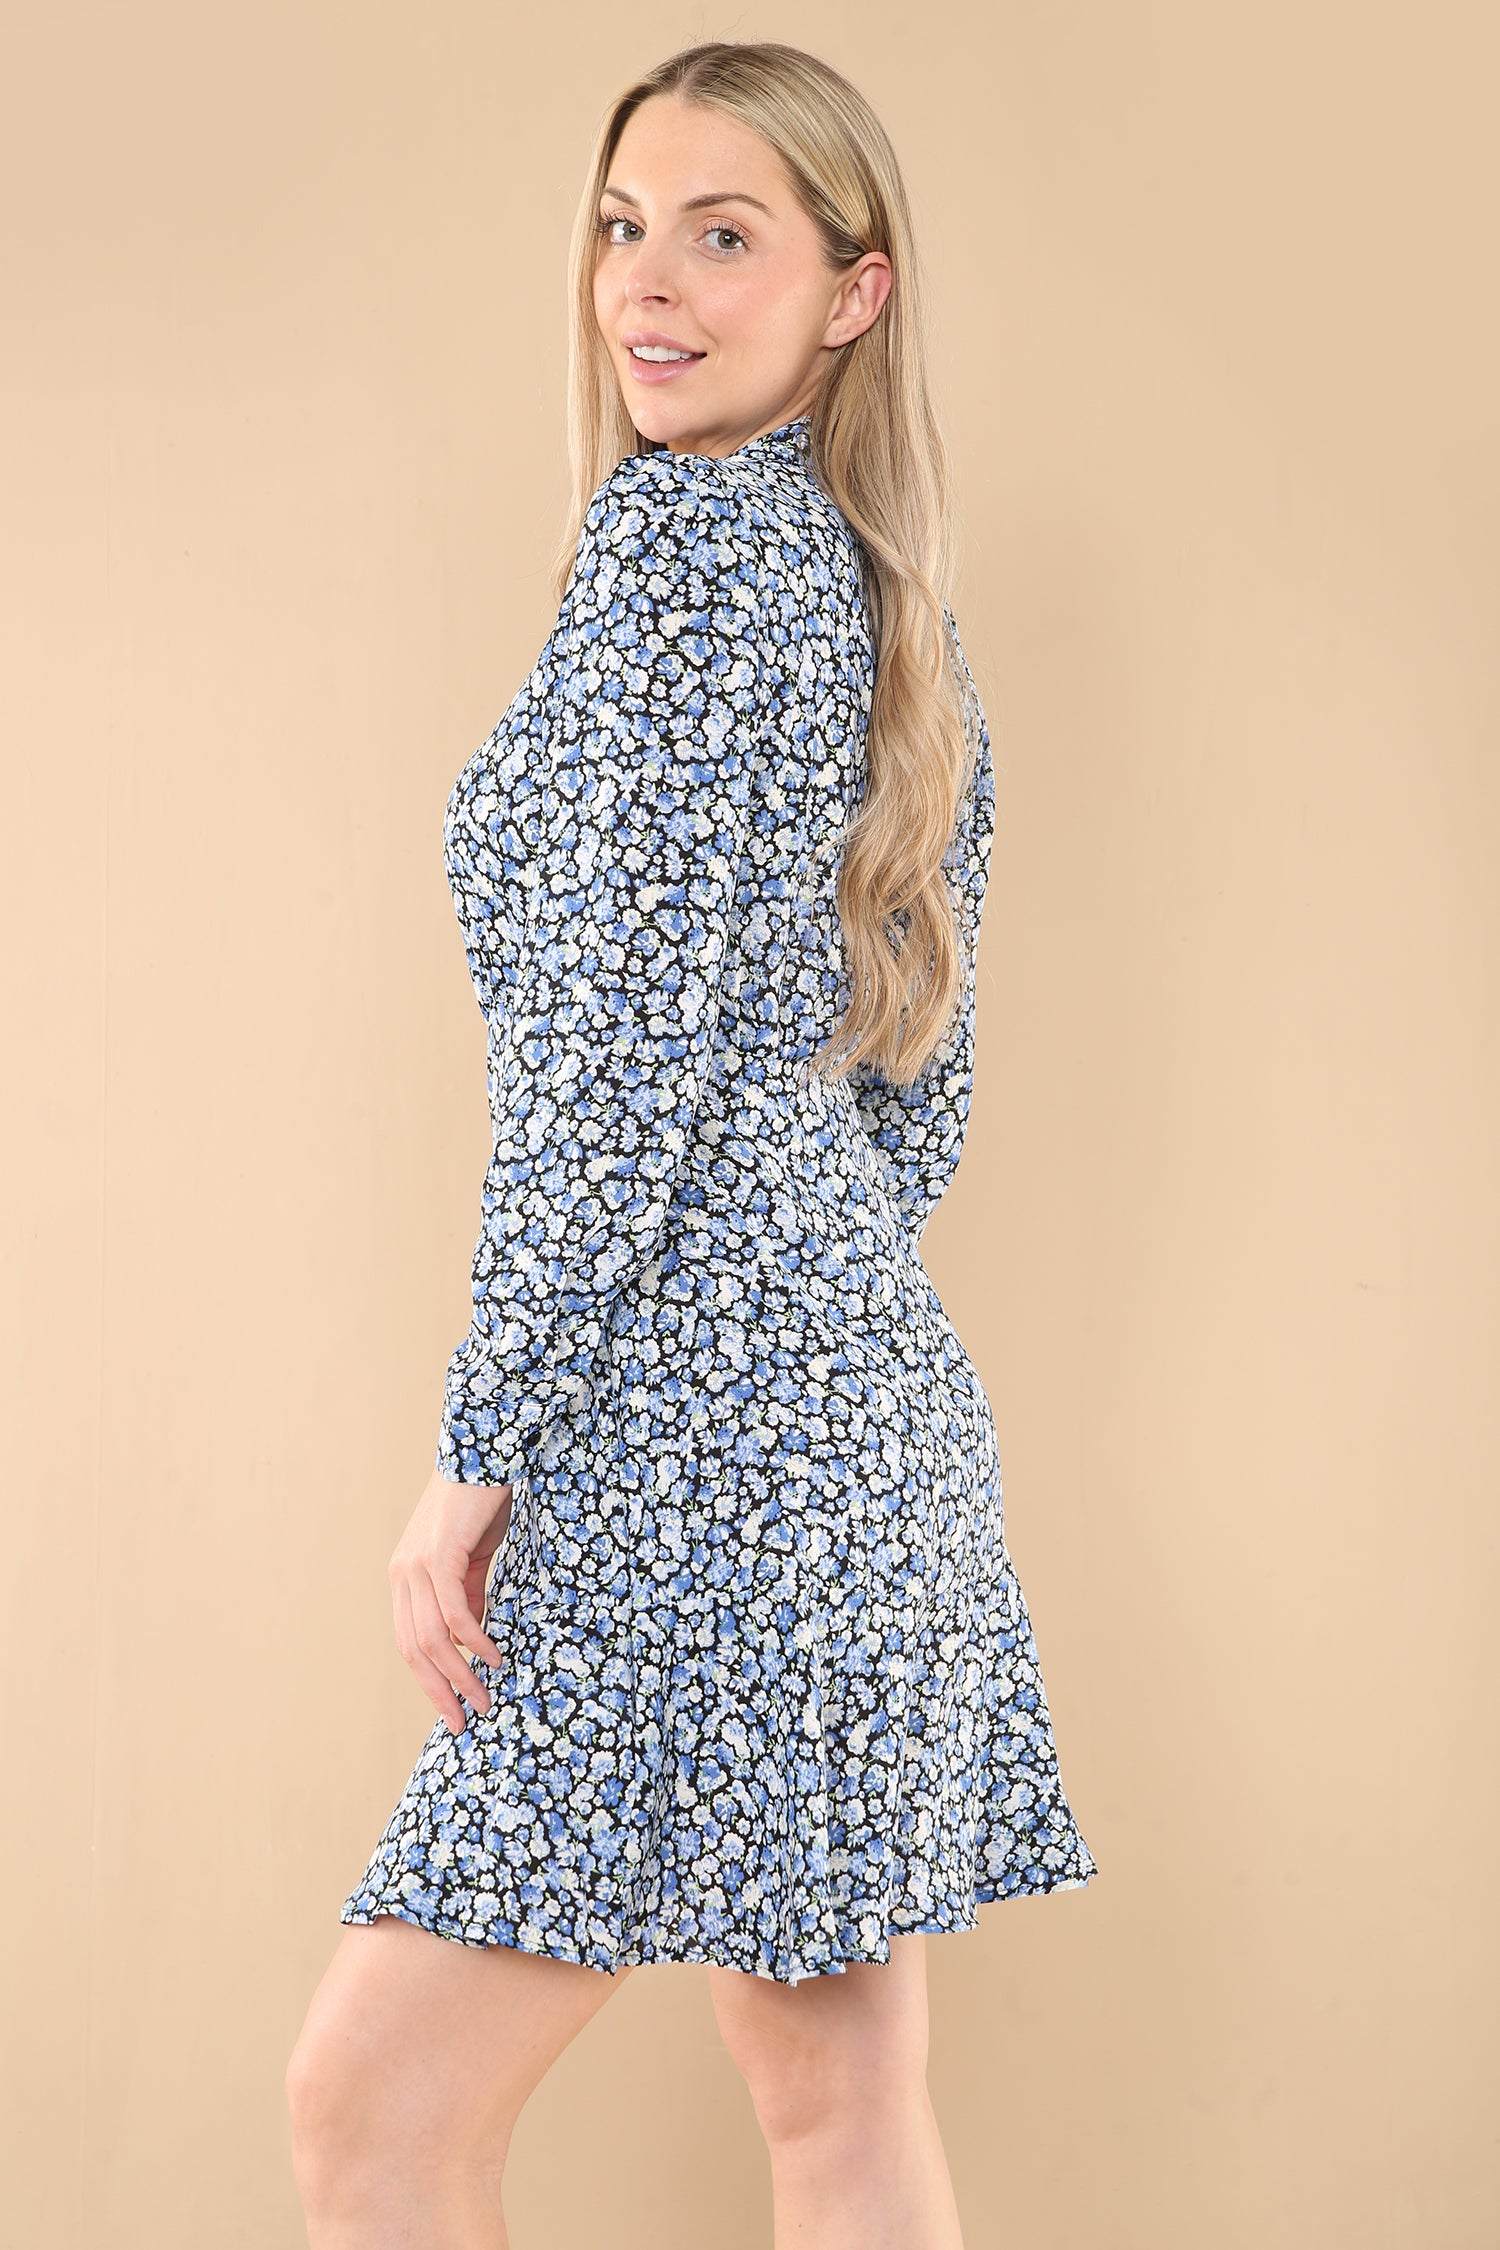 Love Sunshine Blue Floral Printt Frilled Hem Mini Dress Brunch Dress Casual Dress Everyday Dress Garden Party Dress Long Sleeve Dress LS-2141 Summer Dress